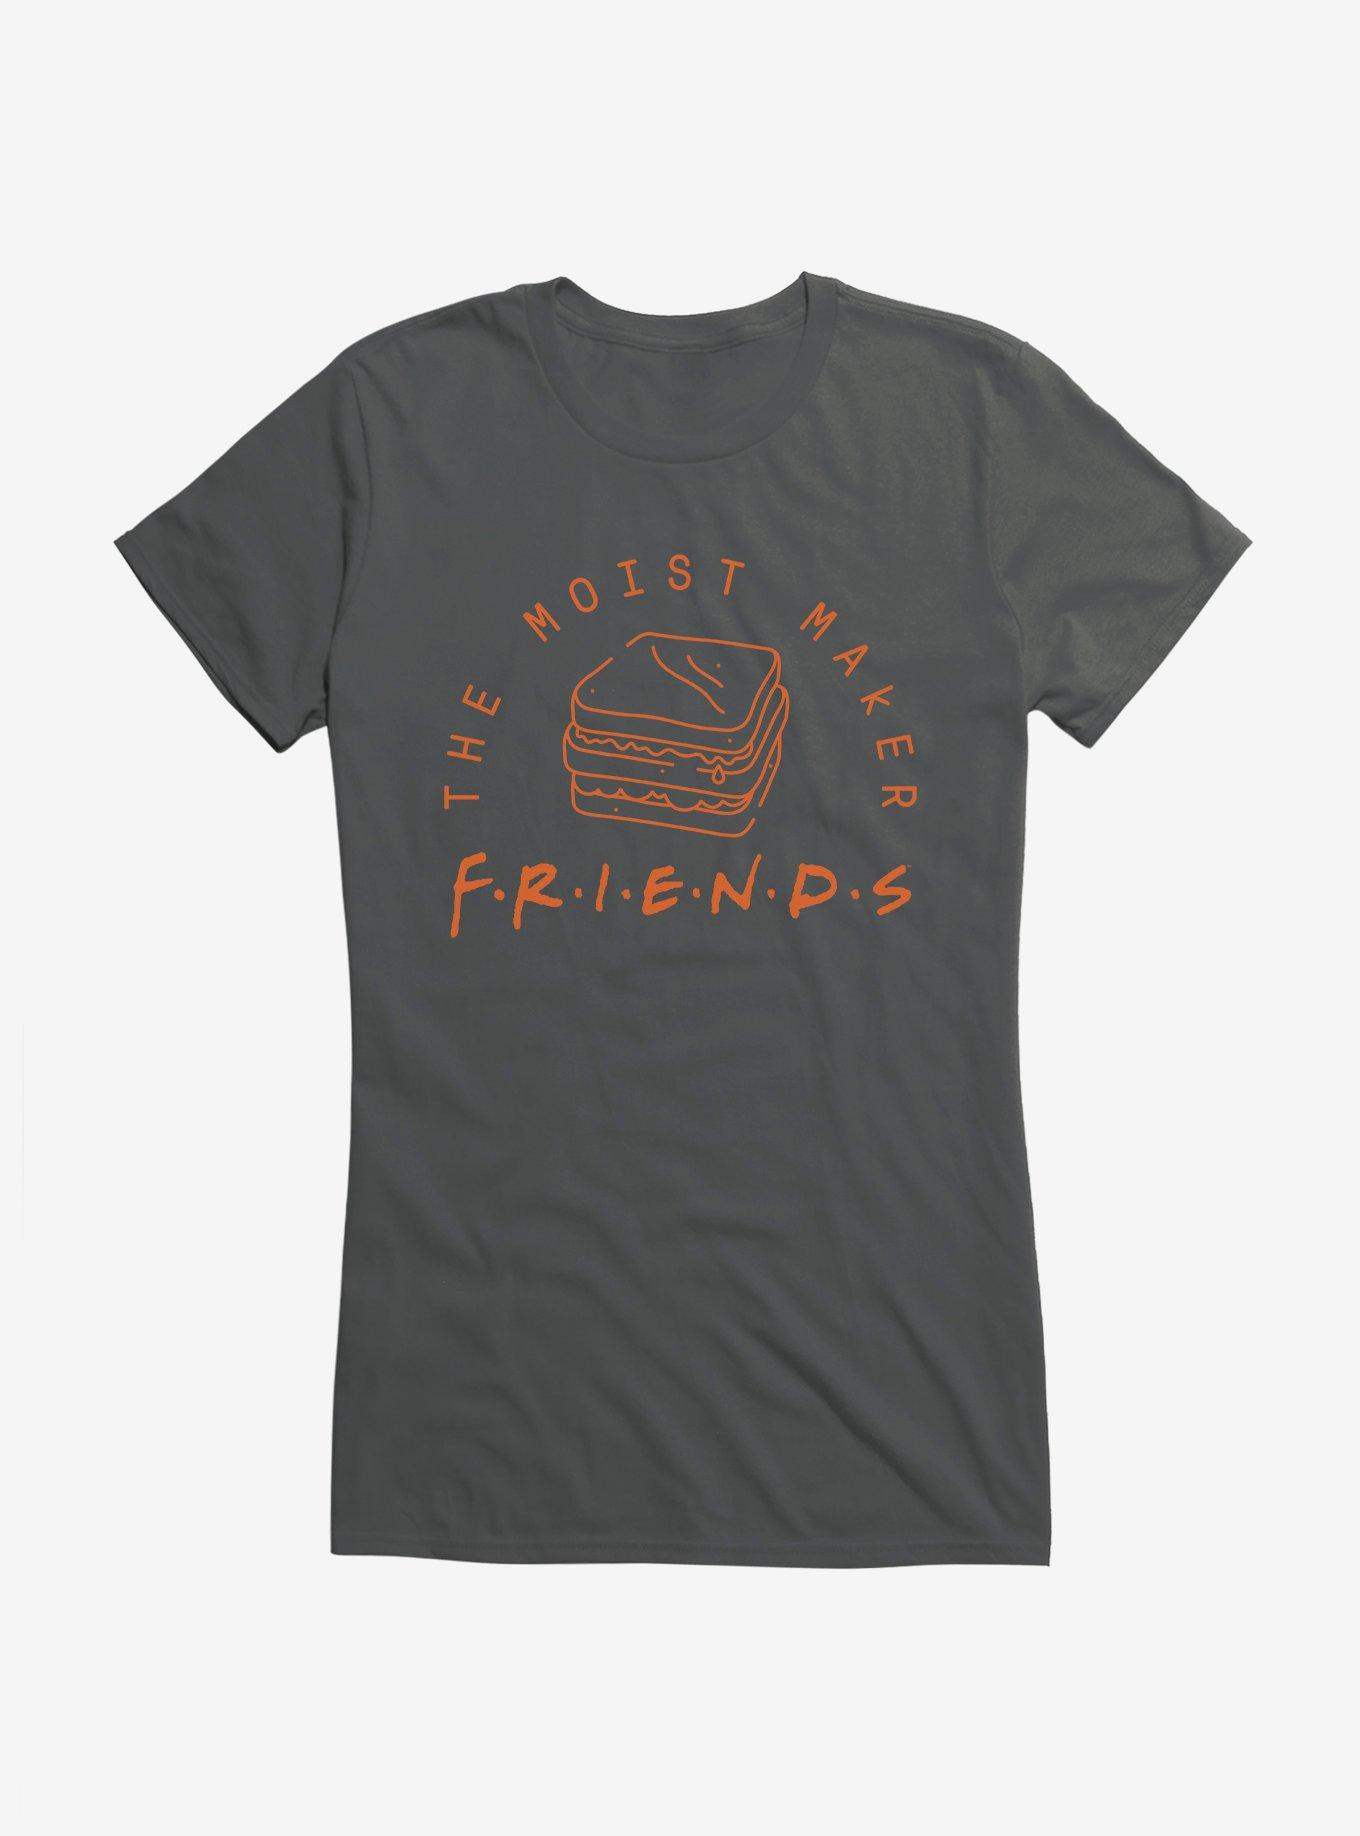 Friends The Moist Maker Girls T-Shirt, CHARCOAL, hi-res